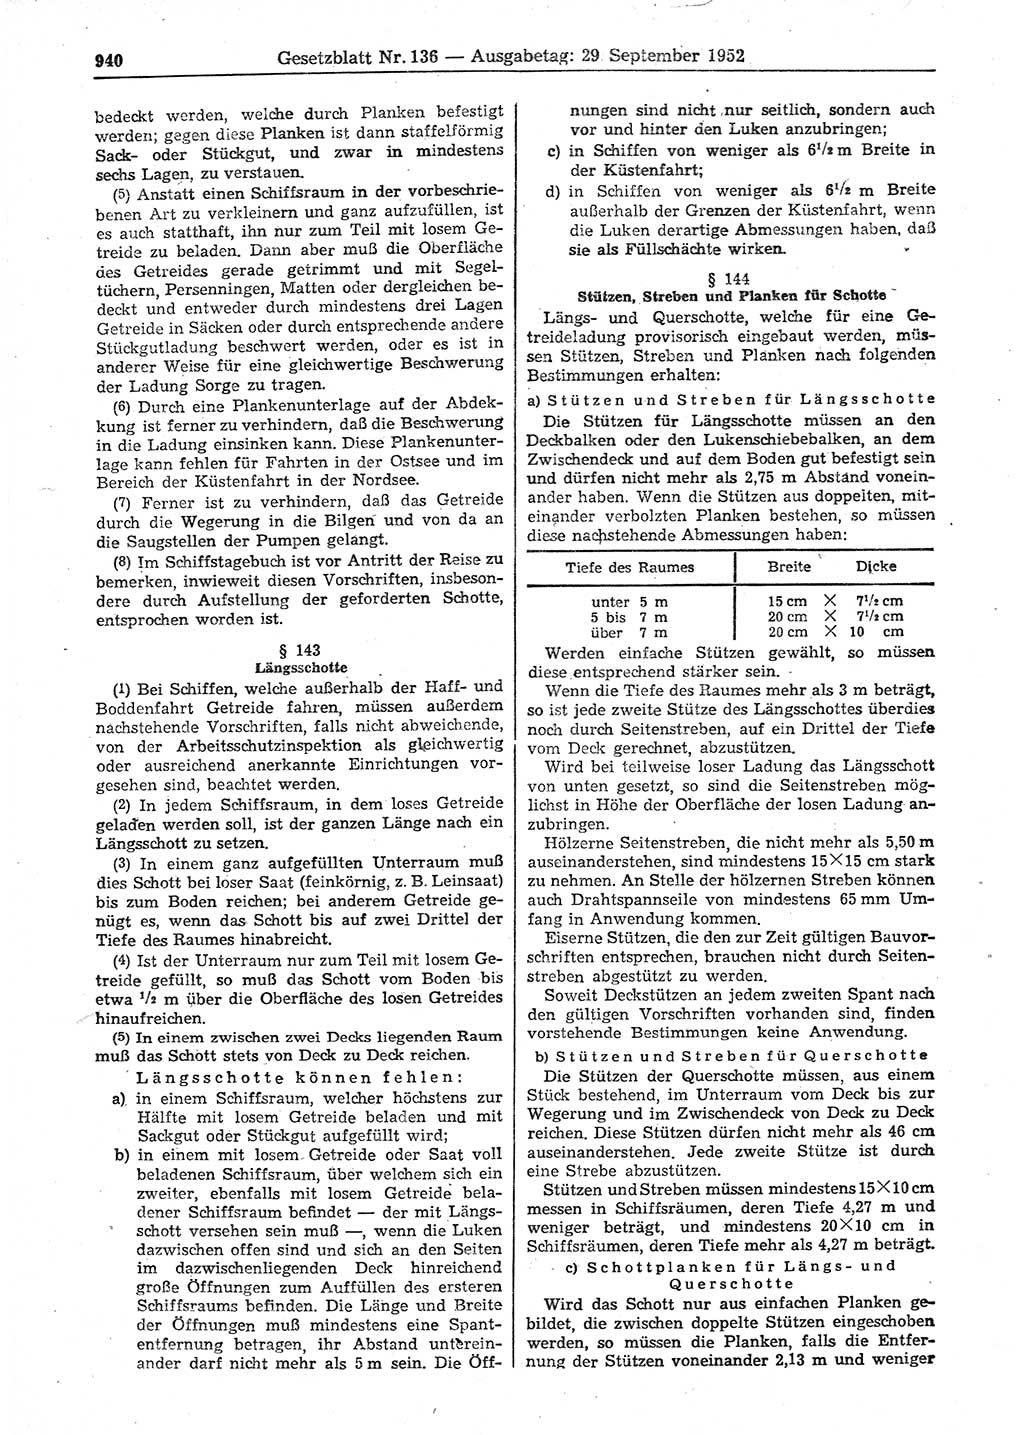 Gesetzblatt (GBl.) der Deutschen Demokratischen Republik (DDR) 1952, Seite 940 (GBl. DDR 1952, S. 940)